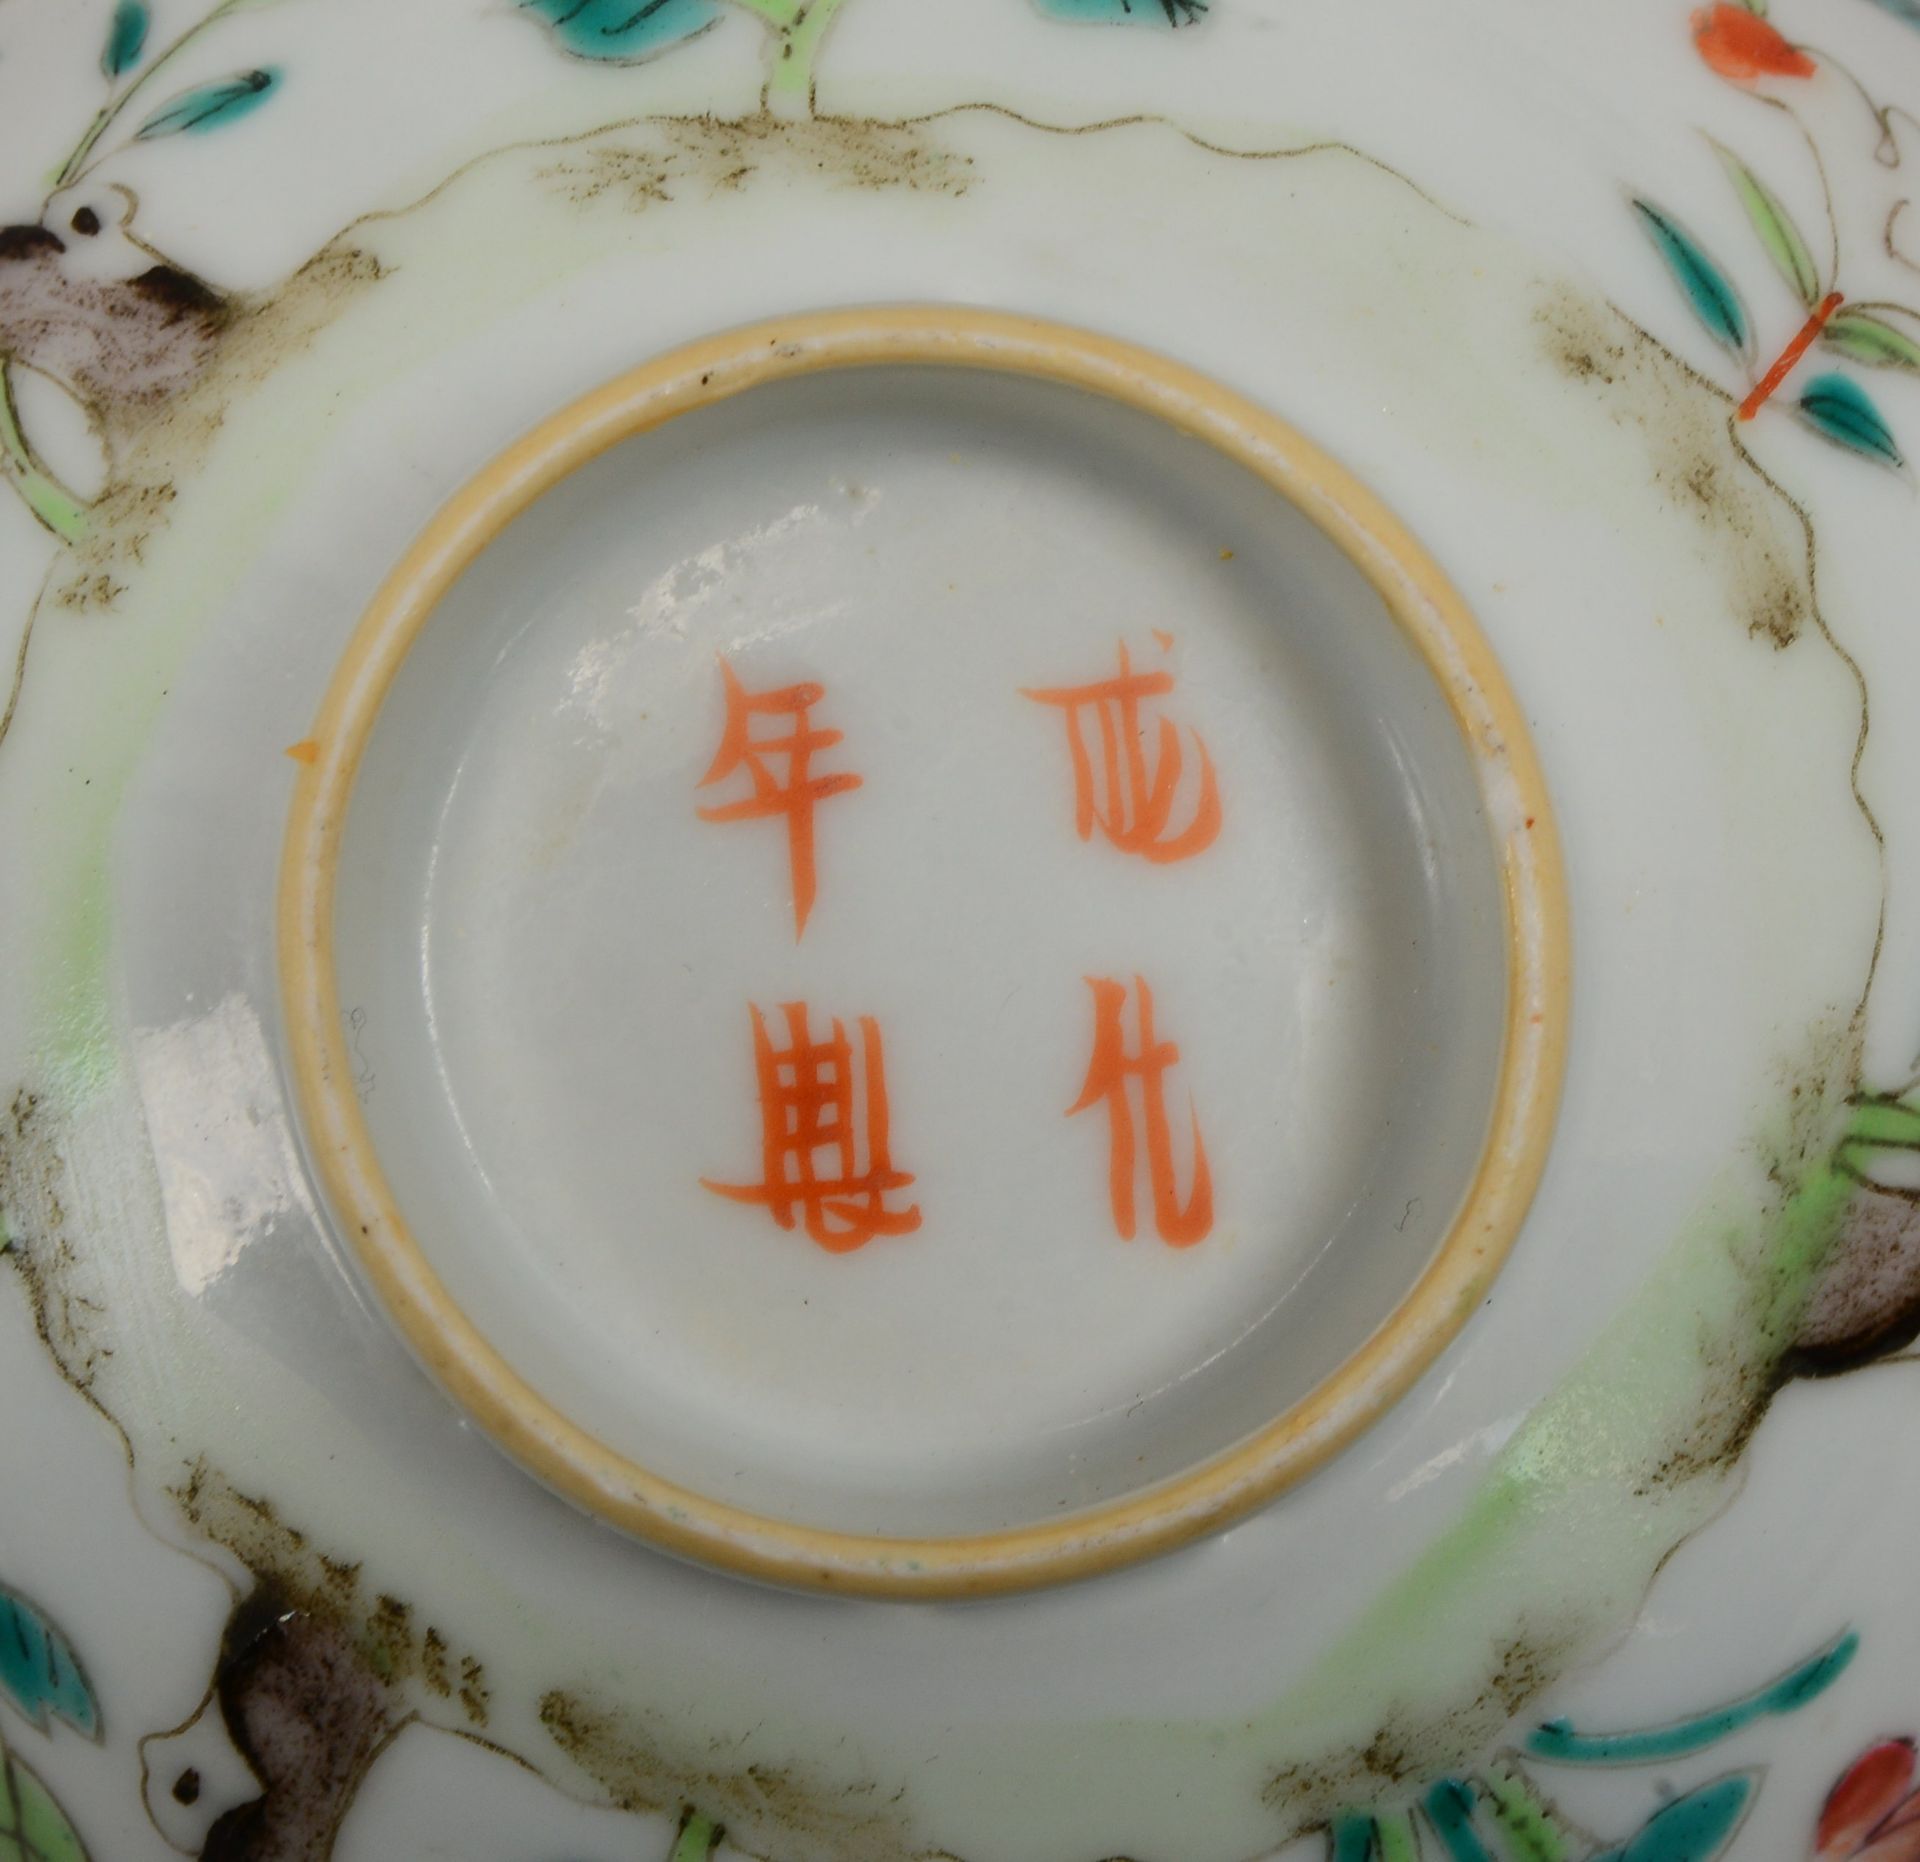 6 Servierteile (China), antik: 4x Sch&auml;lchen und 2x Teetassen, 4-fache Bodenmarke - Image 2 of 2